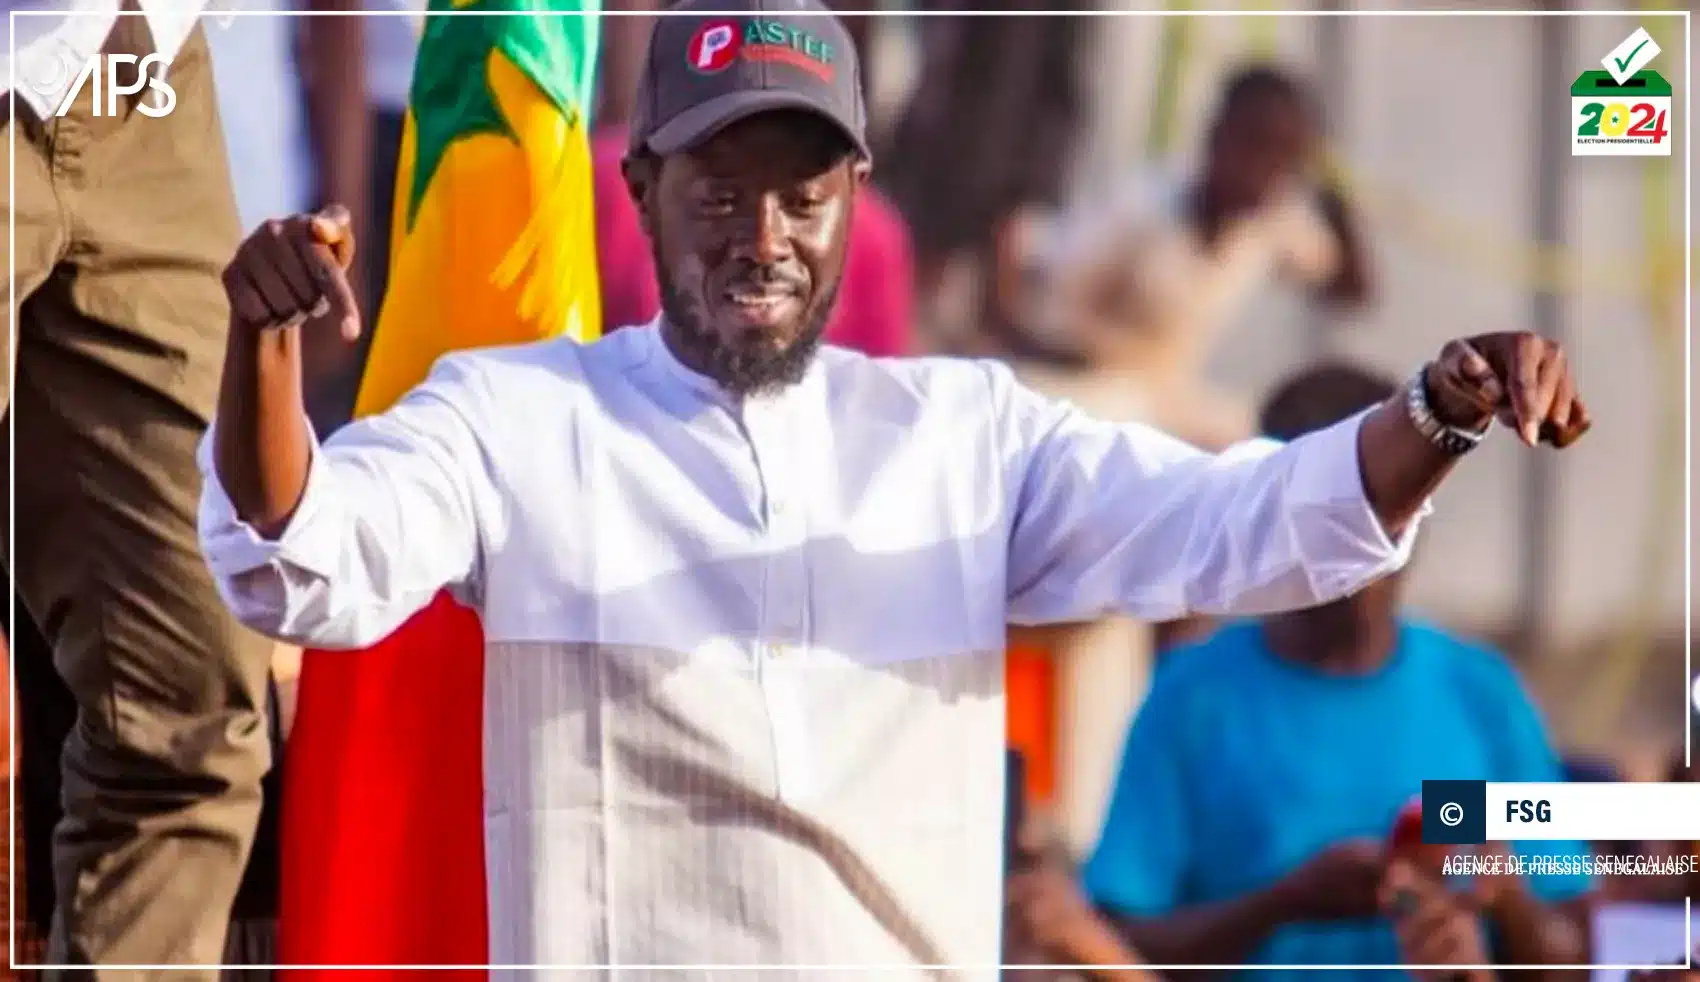 Le président élu, Bassirou Diomaye Faye va s'adresser aux sénégalais à 21h